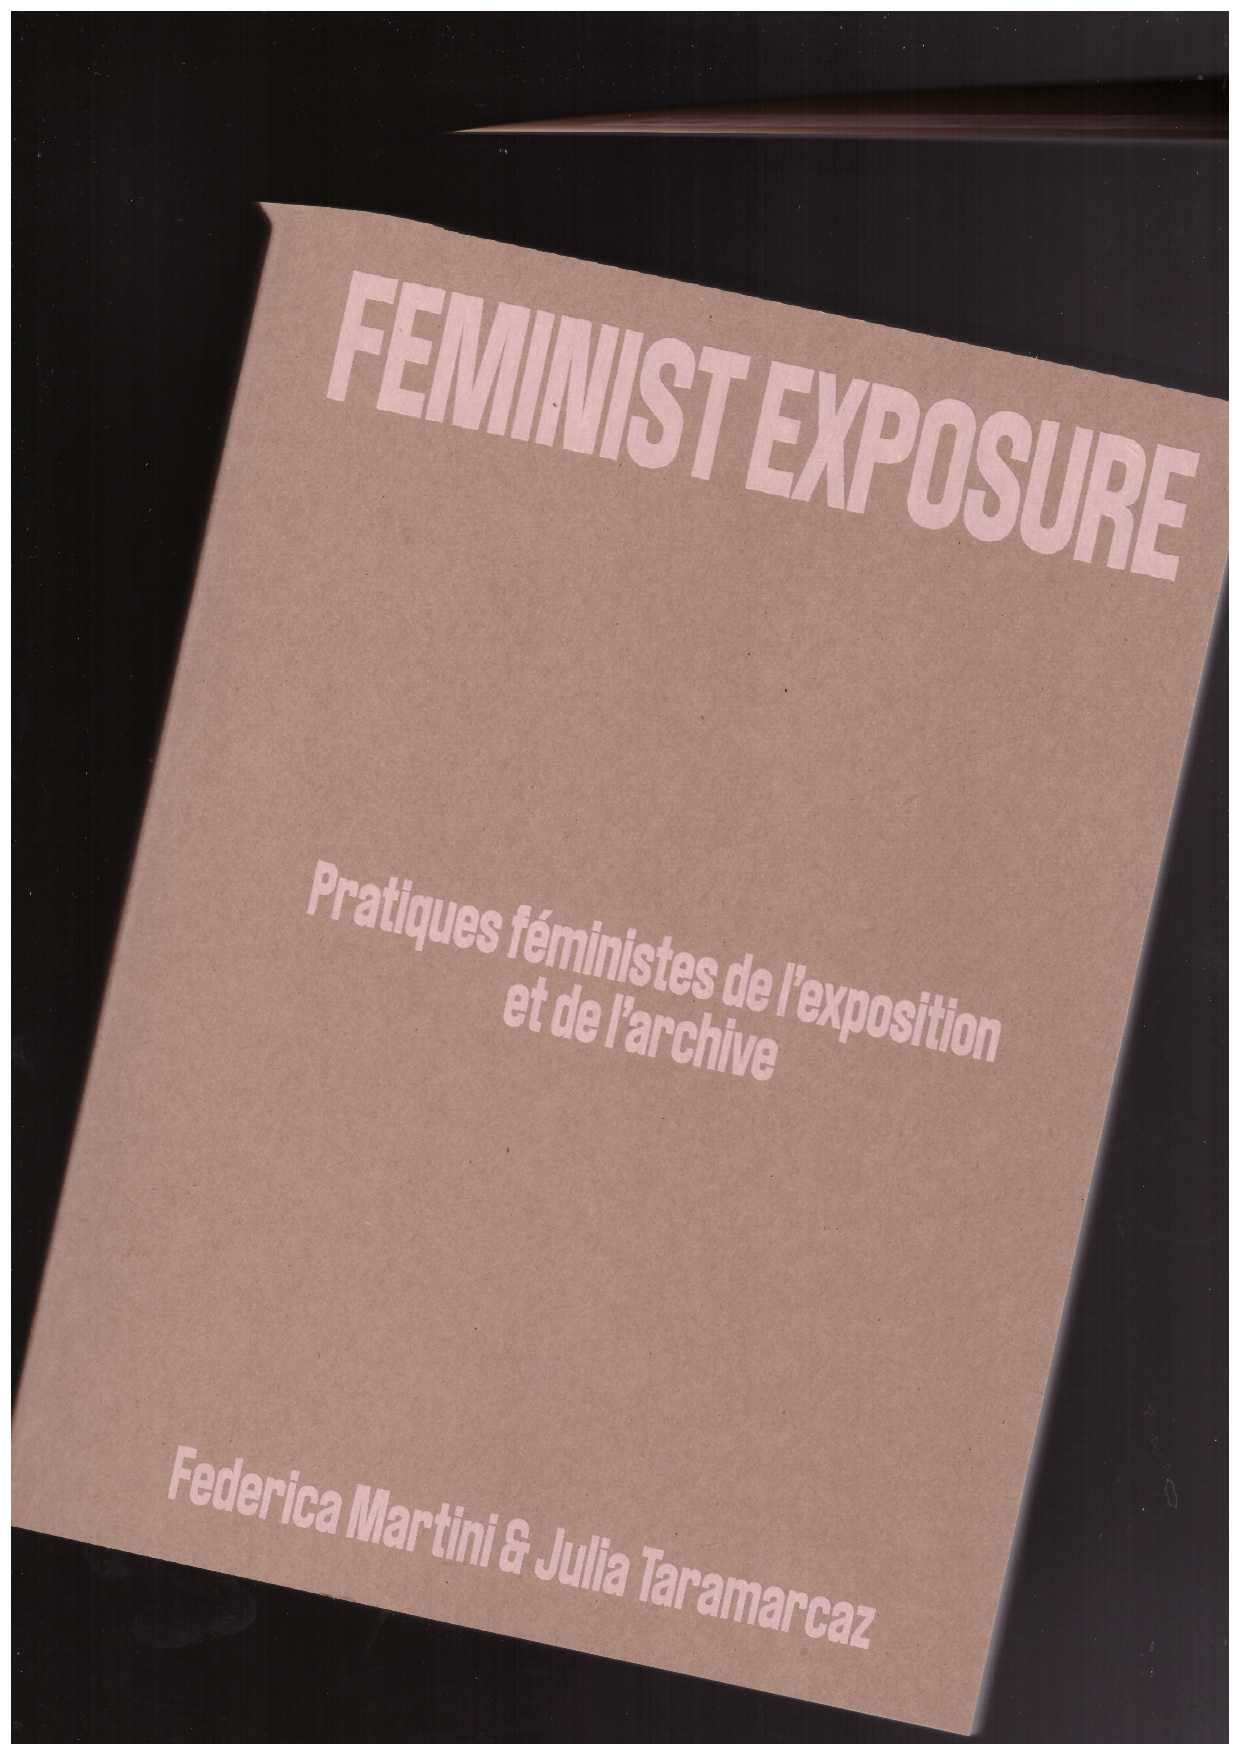 TARAMARCAZ, Julia; MARTINI, Federica (eds.) - Feminist Exposure. Pratiques féministes de l’exposition et de l’archive